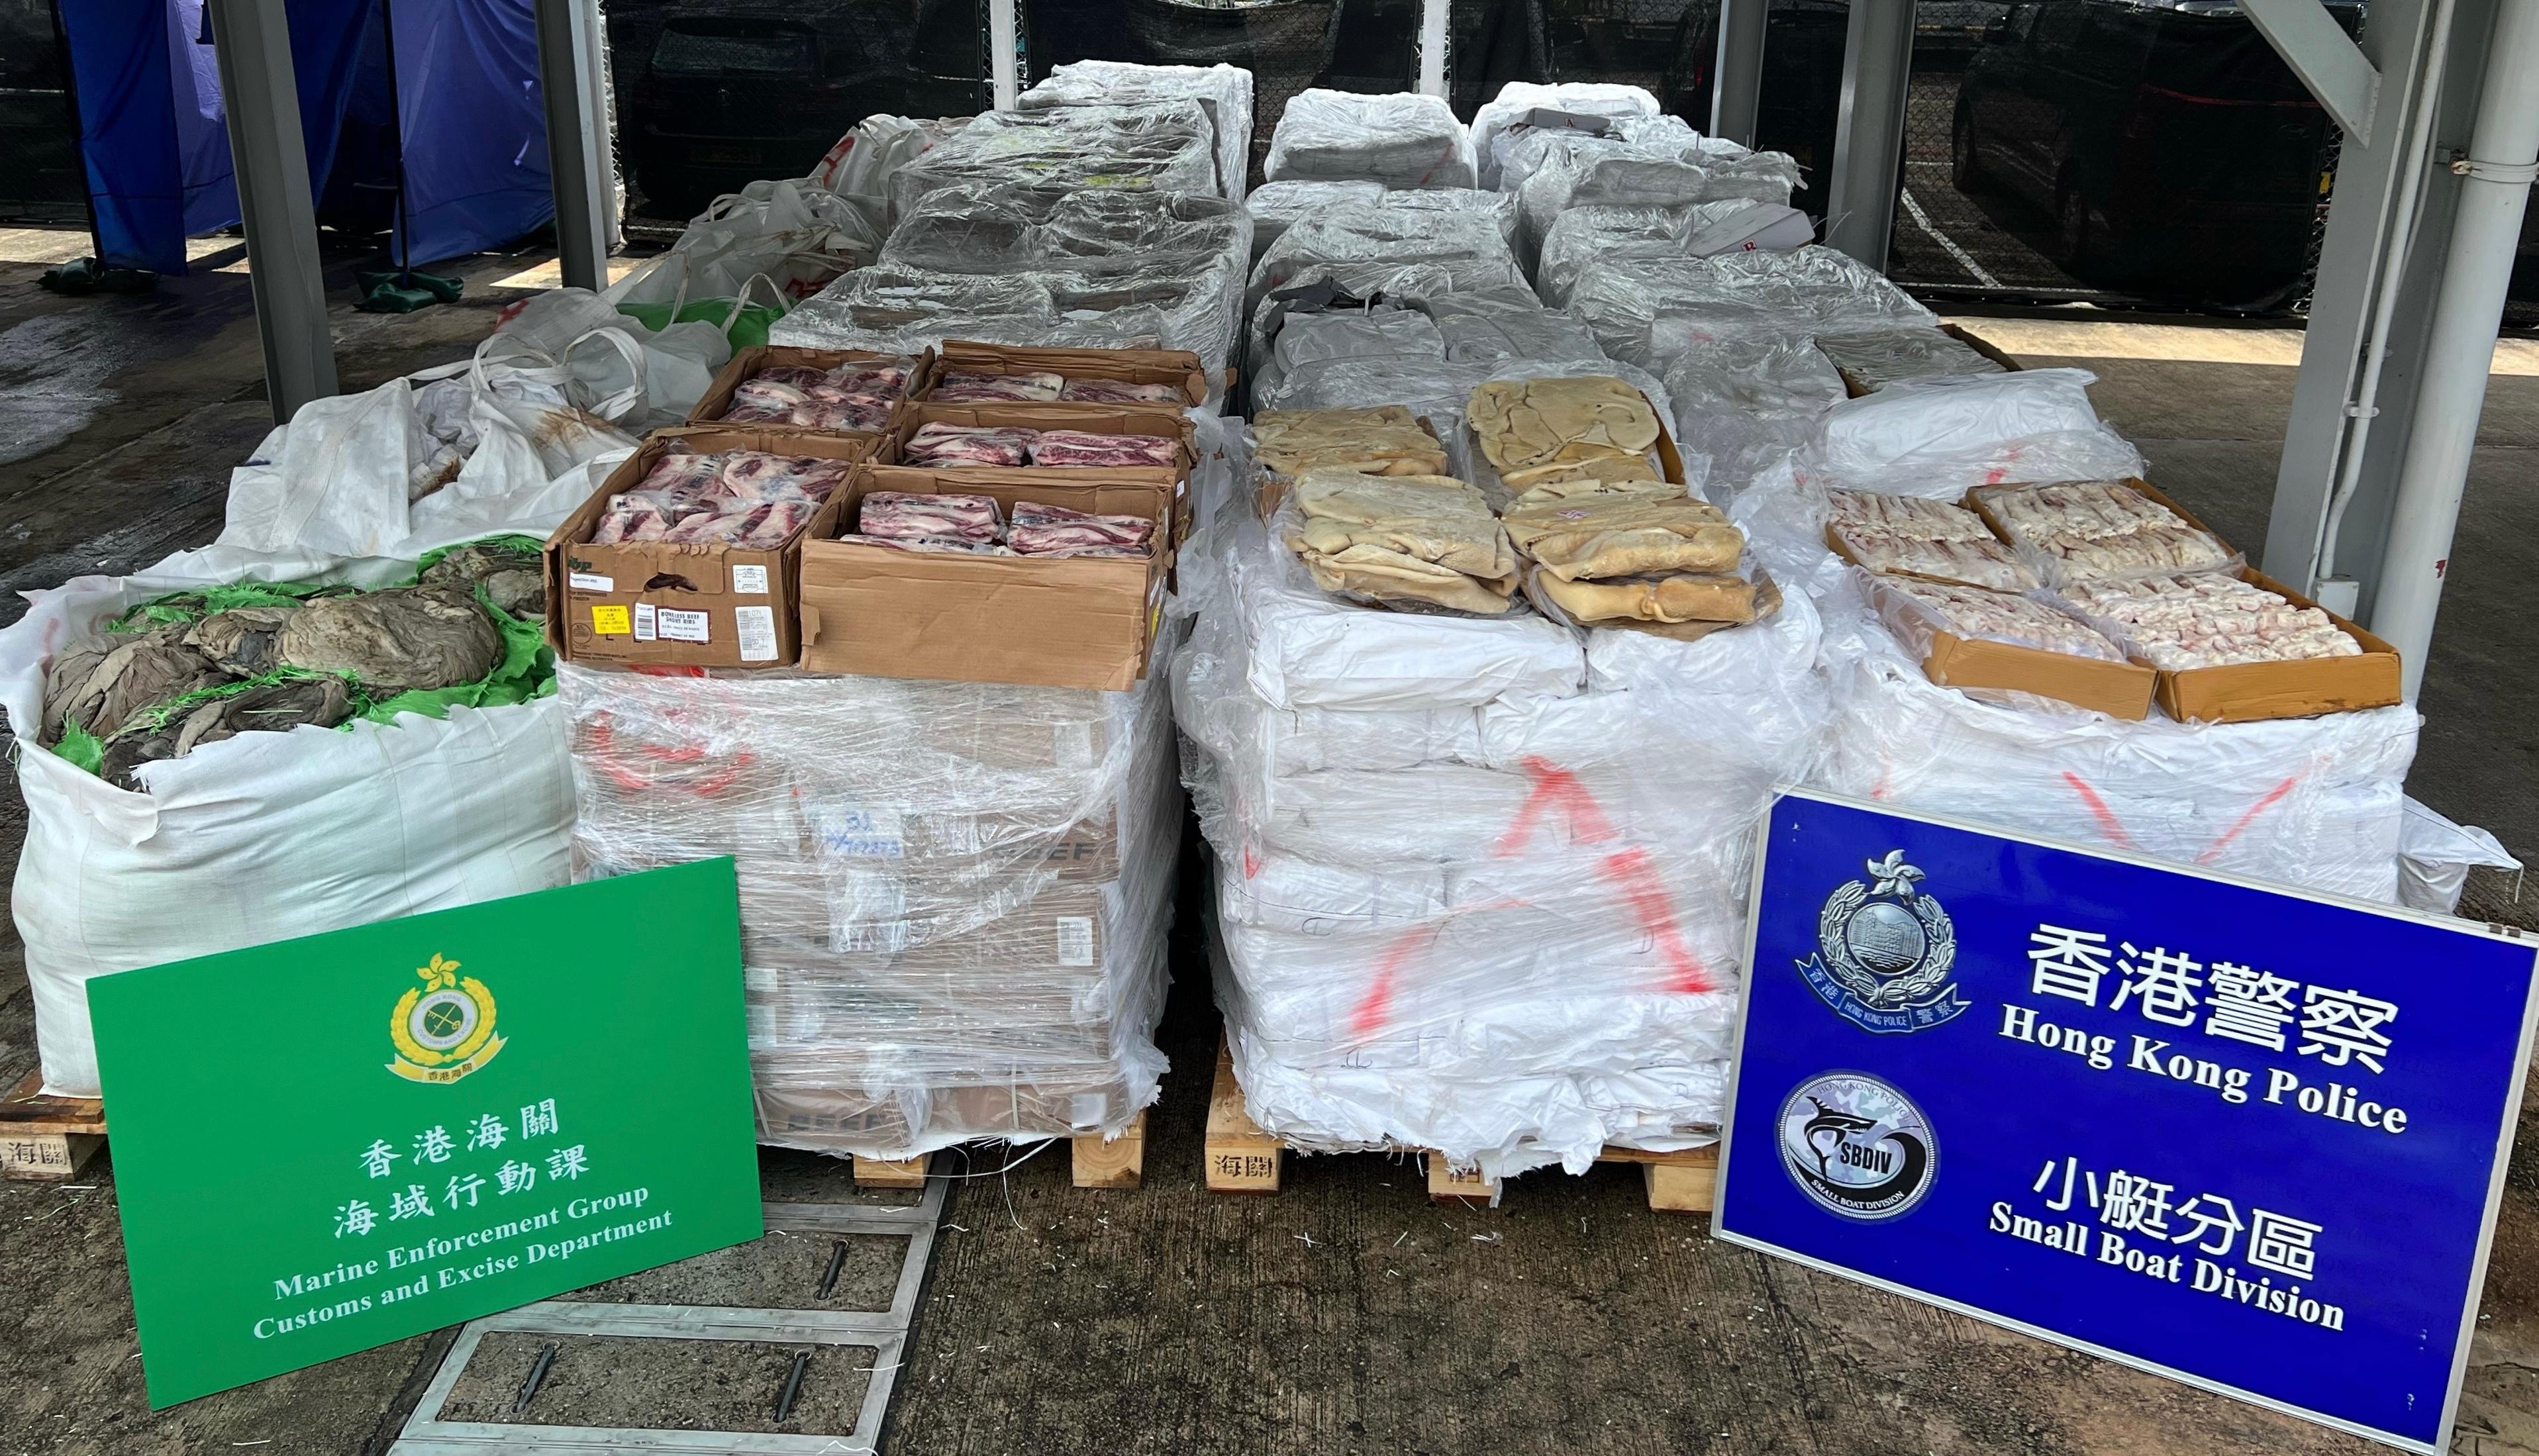 香港海關和水警昨日（八月十七日）在香港西南面水域進行聯合反走私行動，偵破一宗涉嫌利用貨船走私的案件，檢獲約二十二噸懷疑走私凍肉，估計市值約三百四十萬元。圖示部分檢獲的懷疑走私凍肉。

